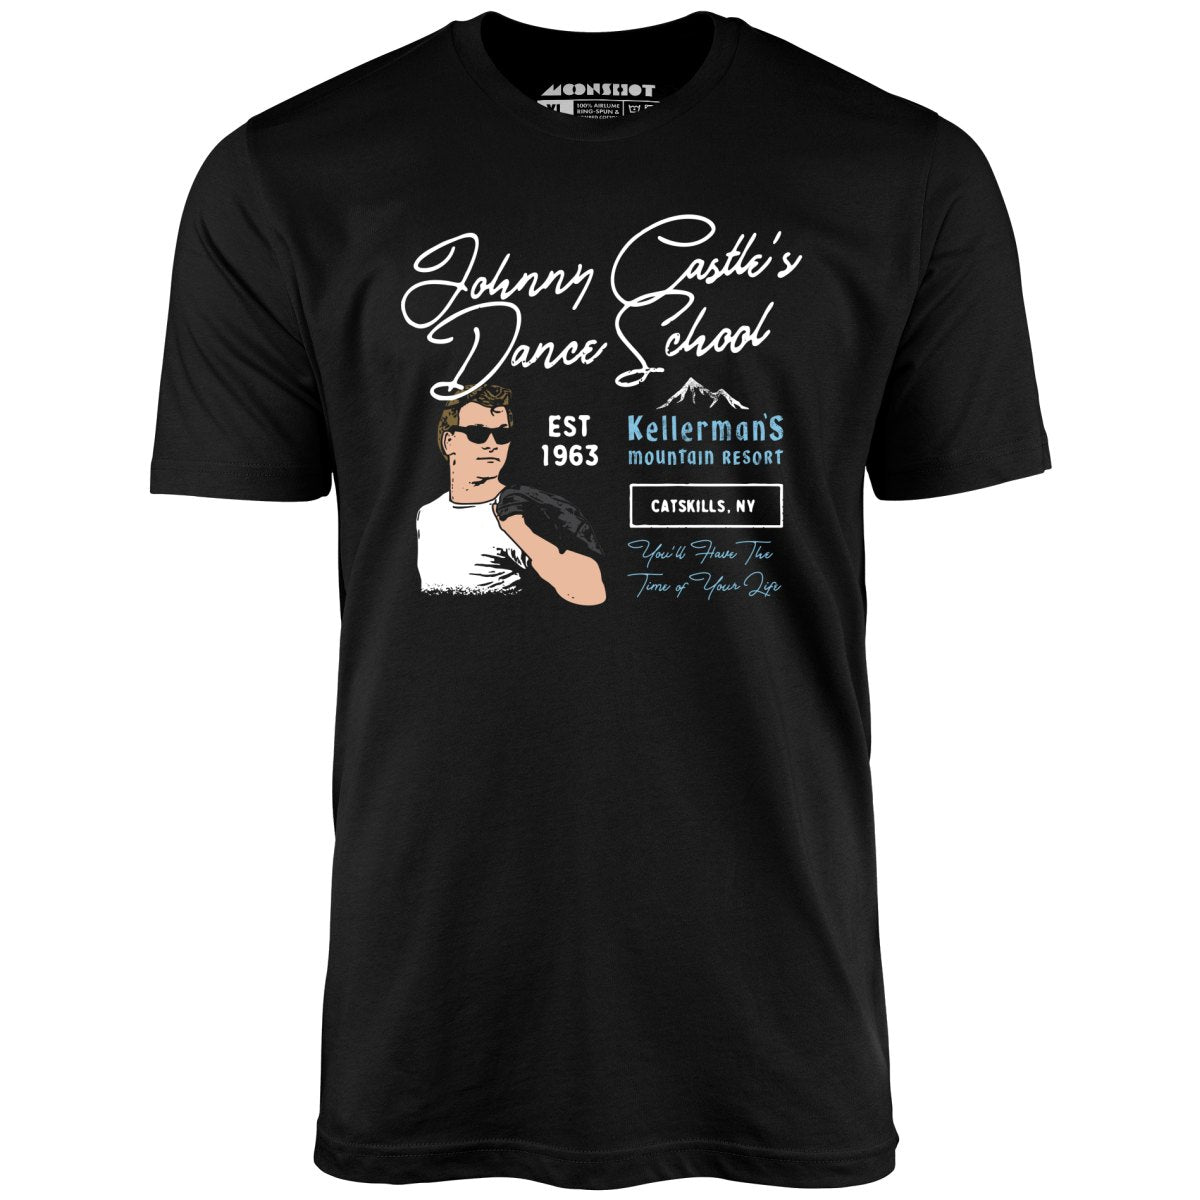 Johnny Castle's Dance School - Unisex T-Shirt